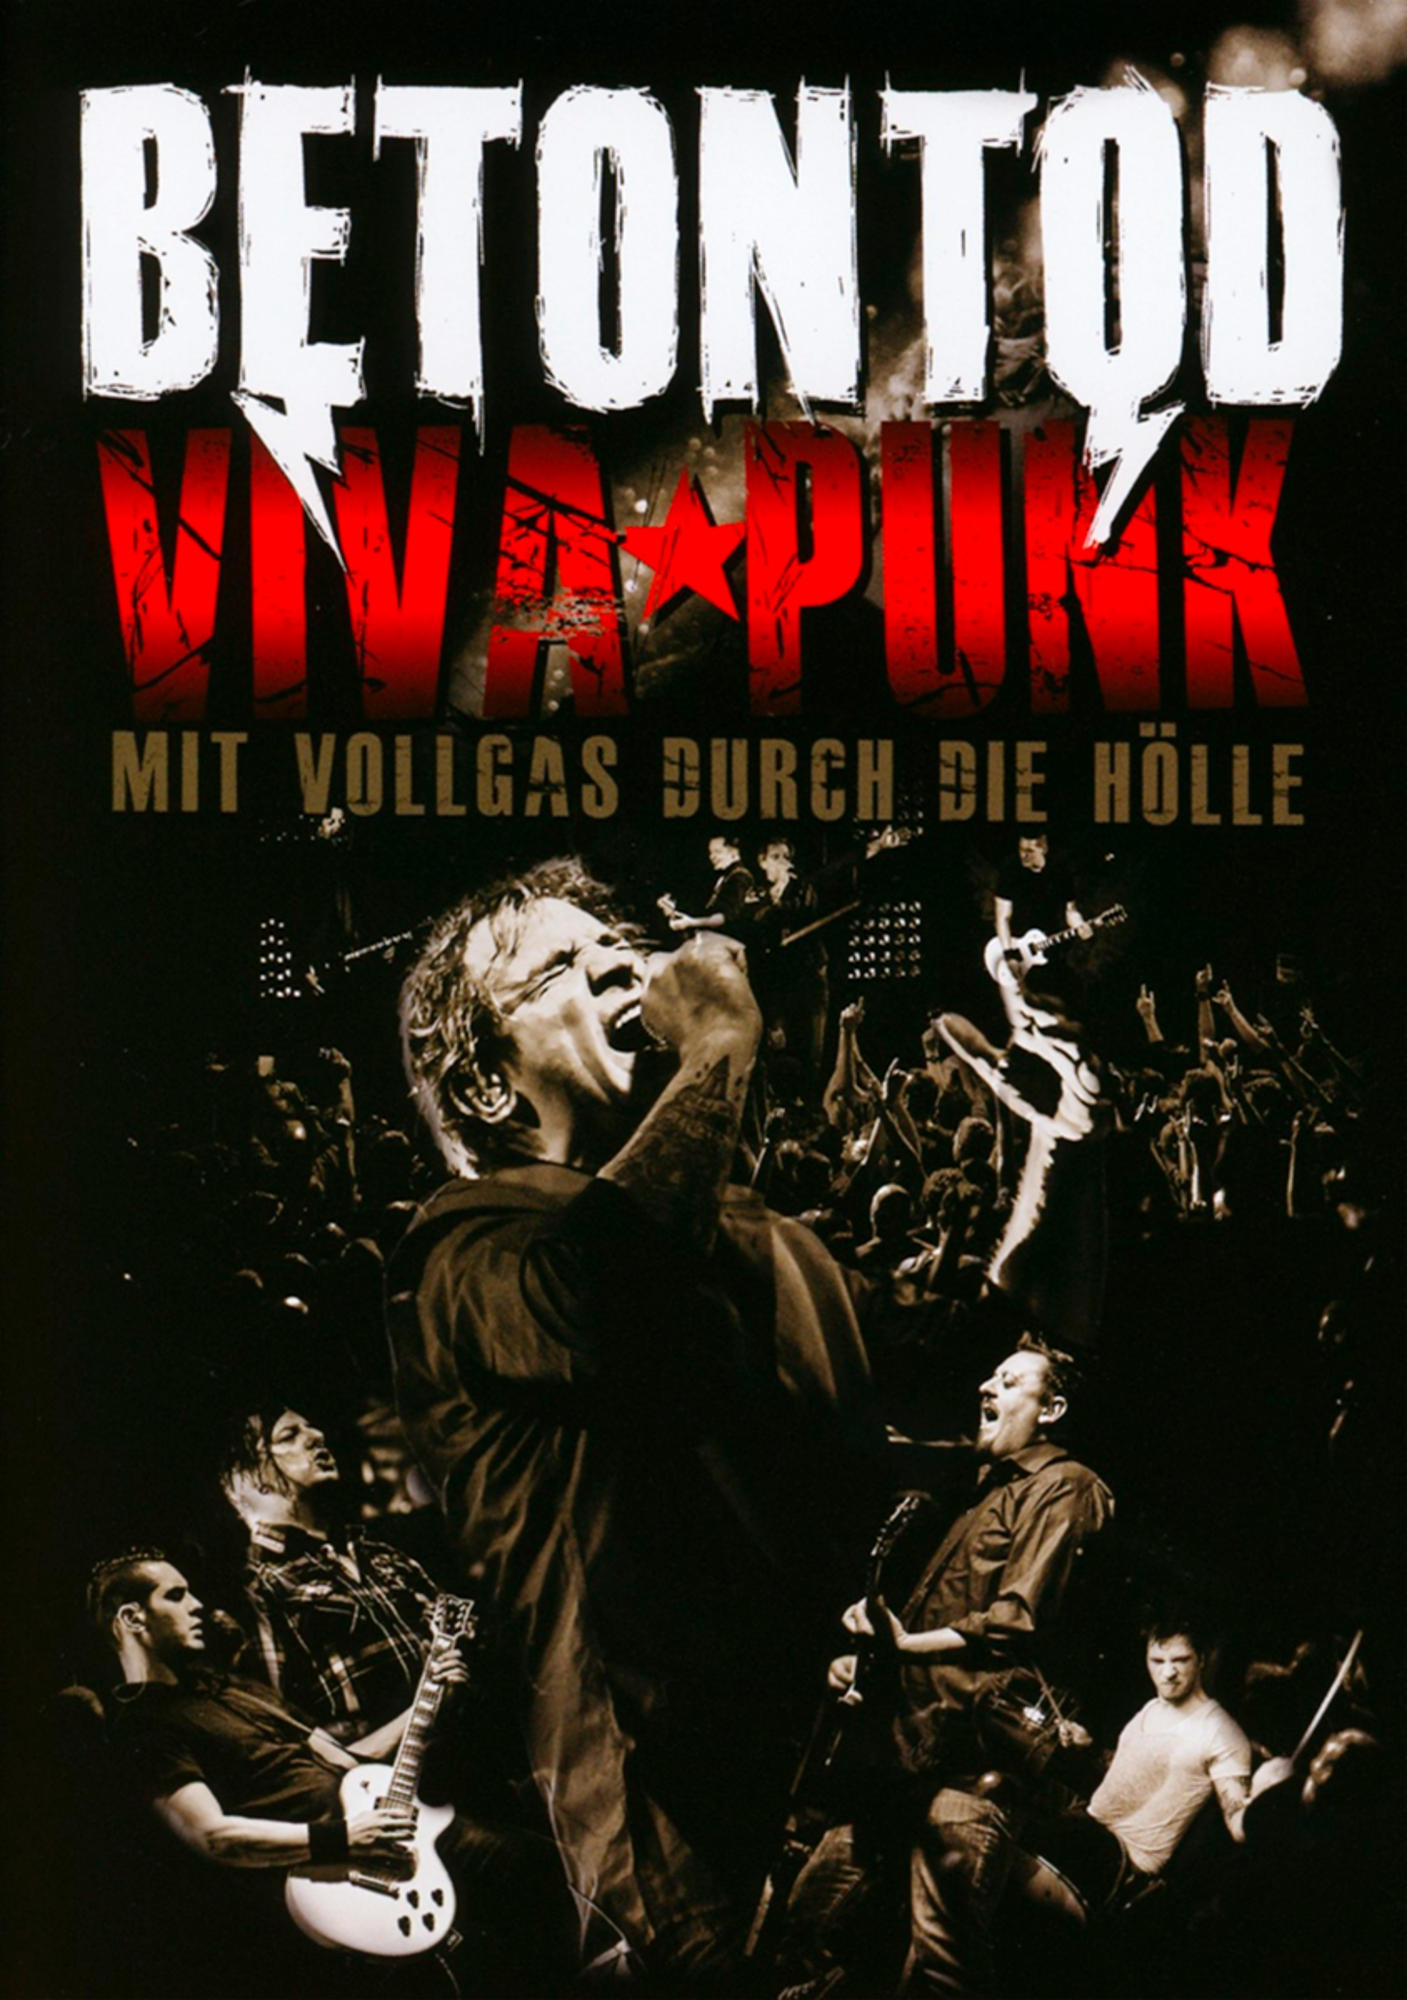 - Viva Durch CD) - Vollgas (DVD Die Punk-Mit Hölle + Betontod